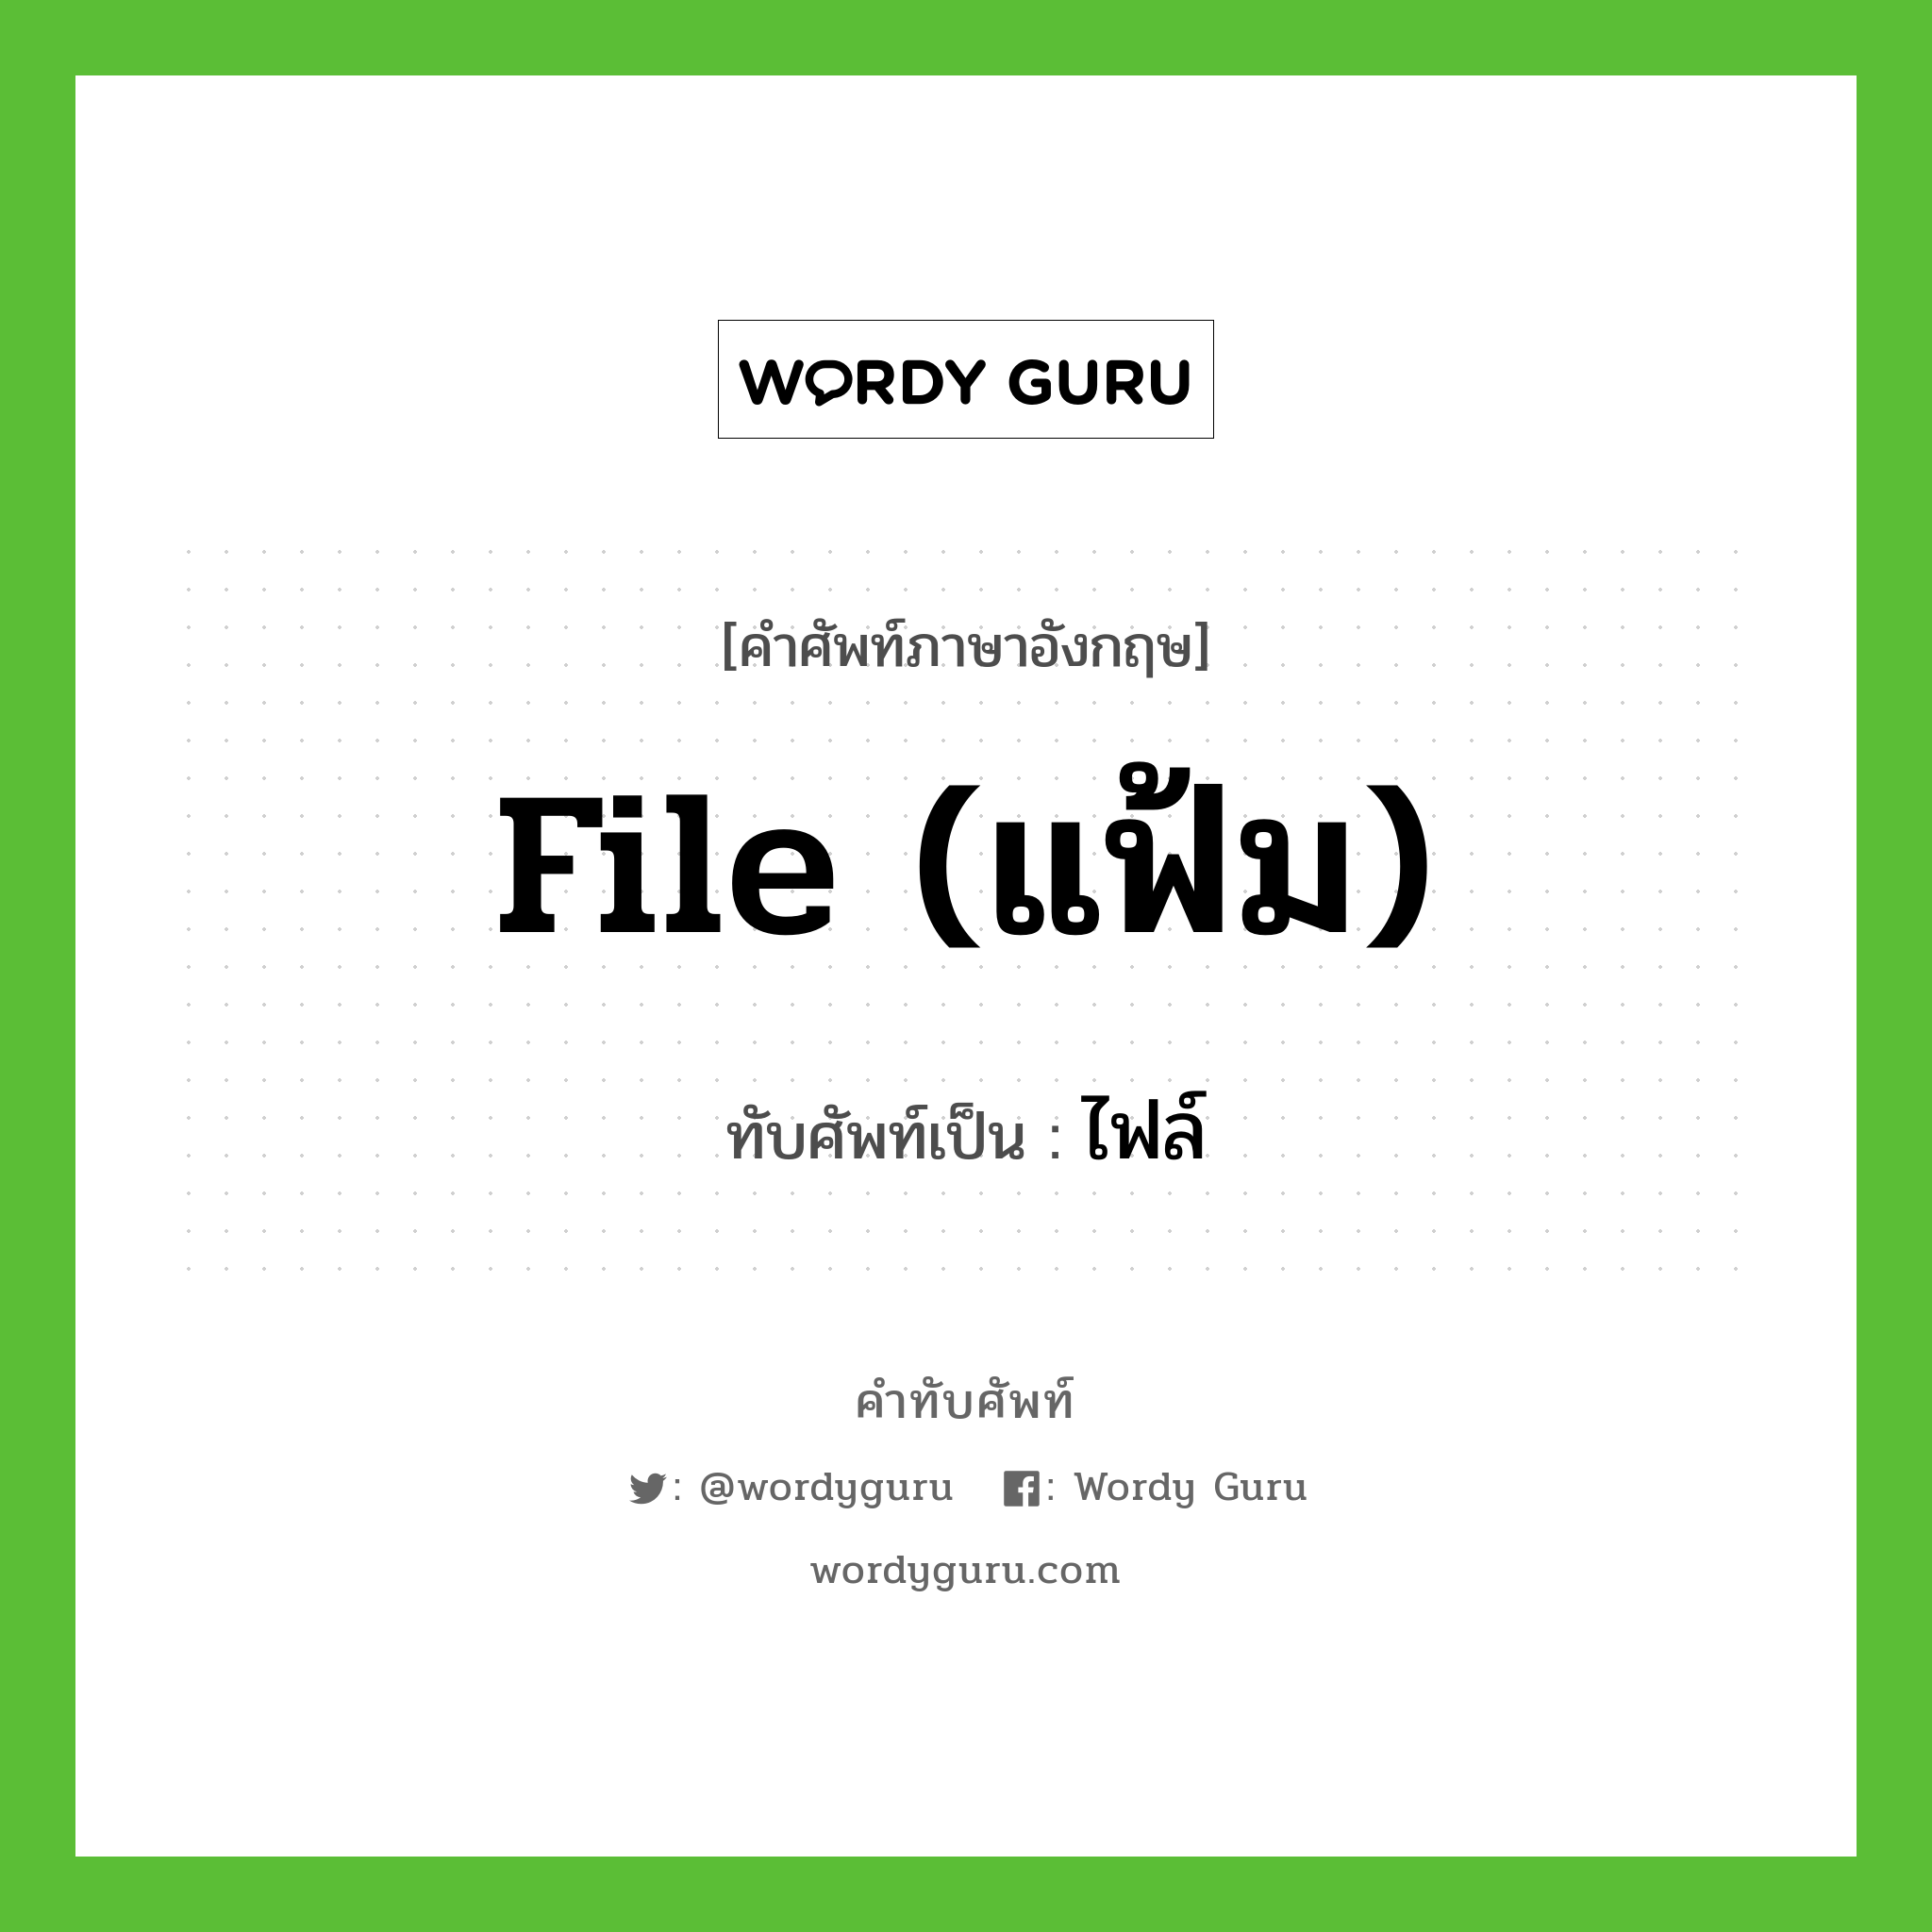 file (แฟ้ม) เขียนเป็นคำไทยว่าอะไร?, คำศัพท์ภาษาอังกฤษ file (แฟ้ม) ทับศัพท์เป็น ไฟล์